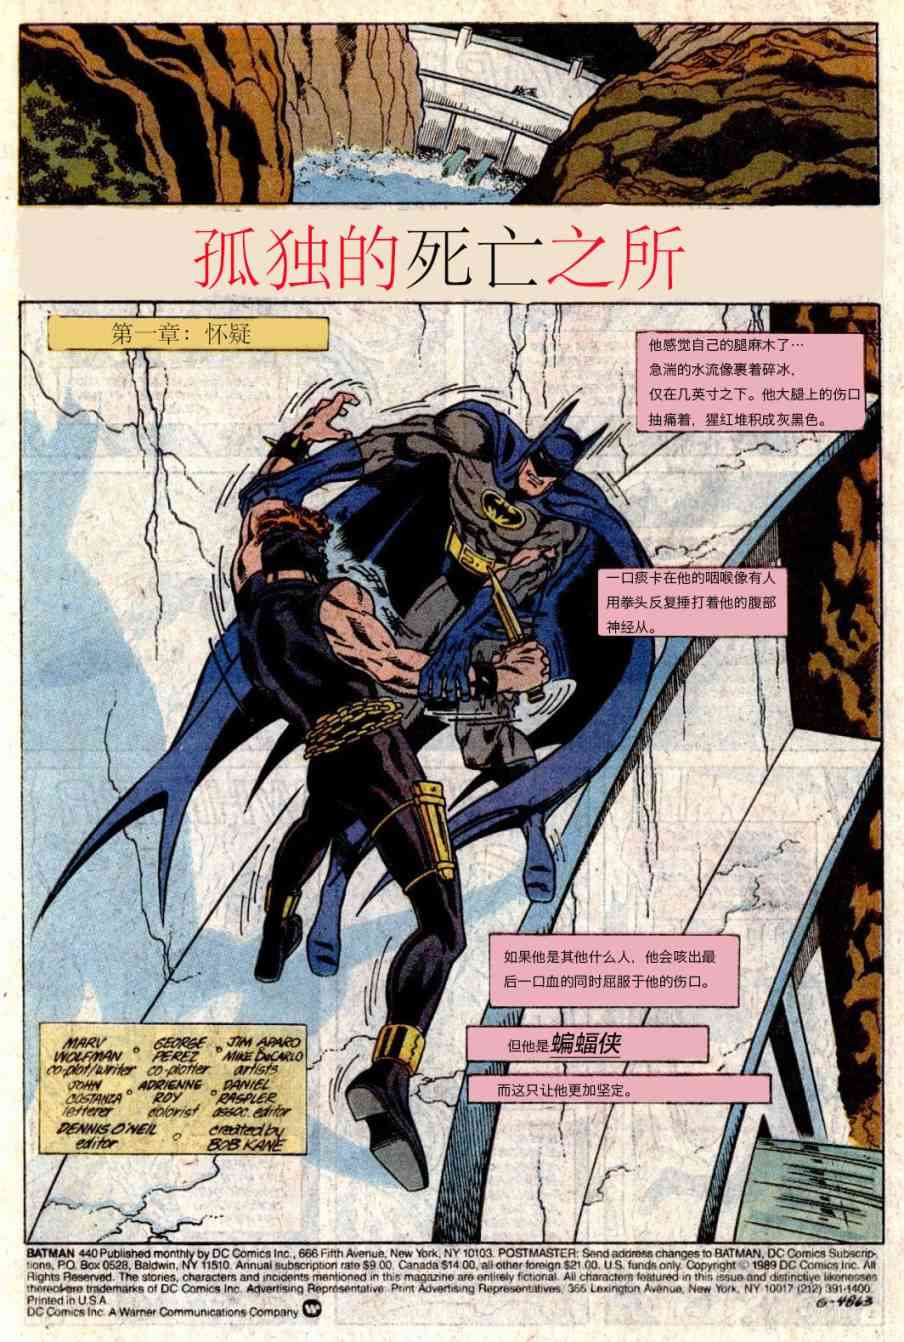 蝙蝠侠 - 第440卷孤独死亡之所#1 - 2